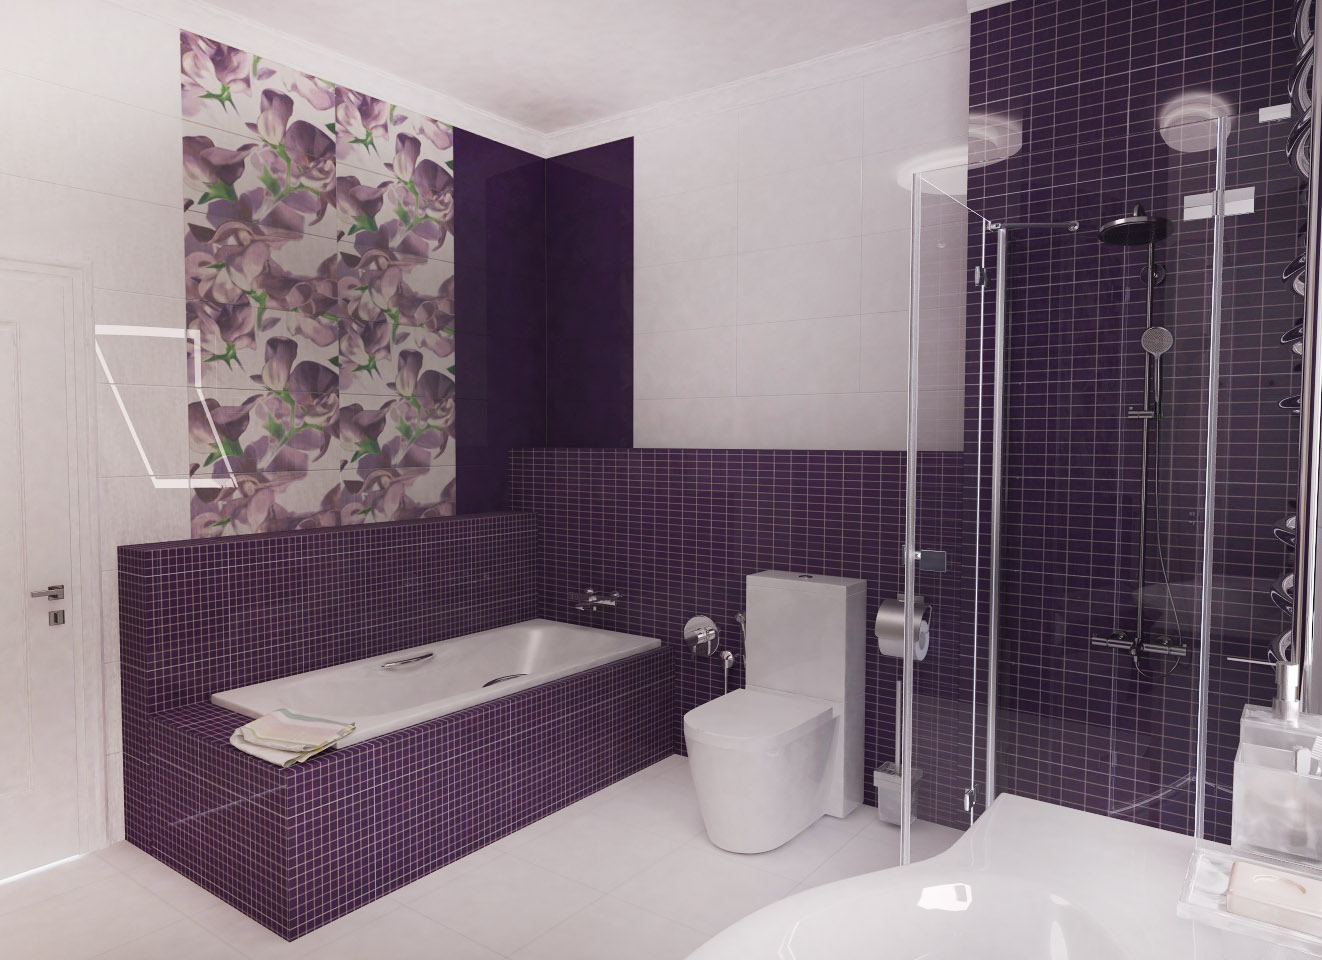 Фиолетовая Ванная, дизайн-проект ванной под ключ, дизайн ванной комнаты, интерьер ванной